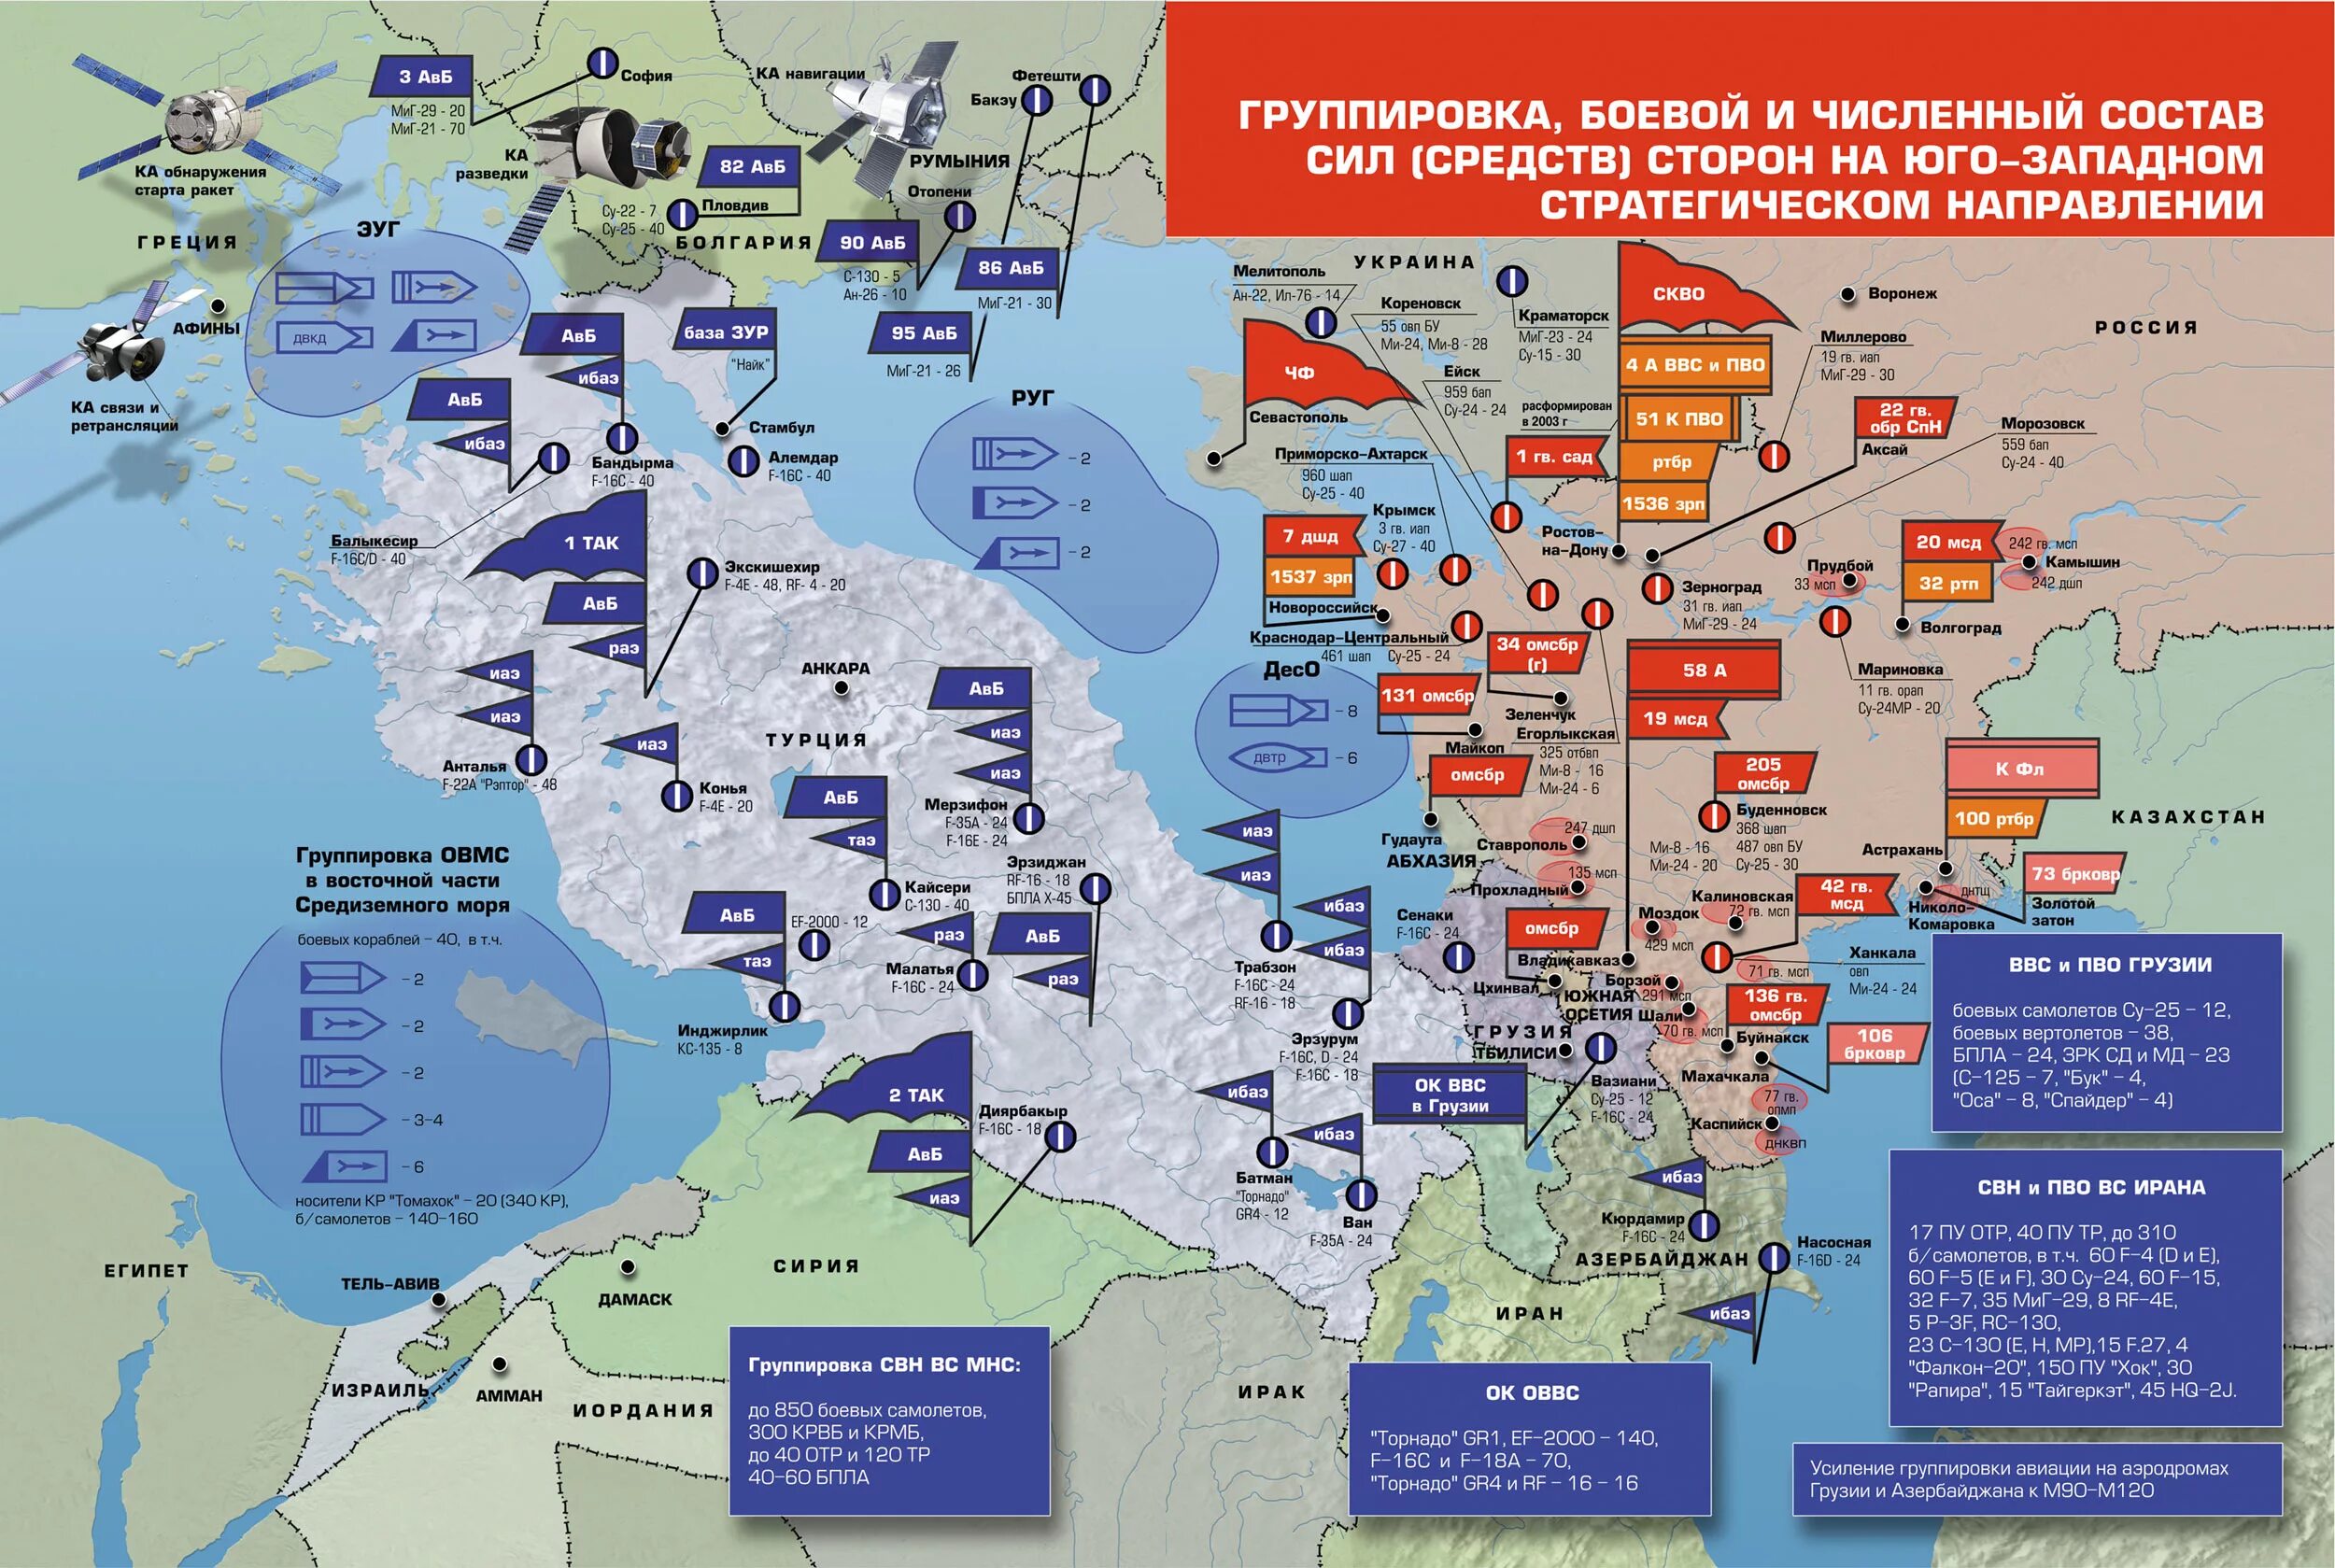 Сценарий военной операции. ПВО НАТО В Европе на карте. Военные базы НАТО В Европе на карте. Карта размещения войск НАТО В Европе. Группировка войск НАТО на карте.